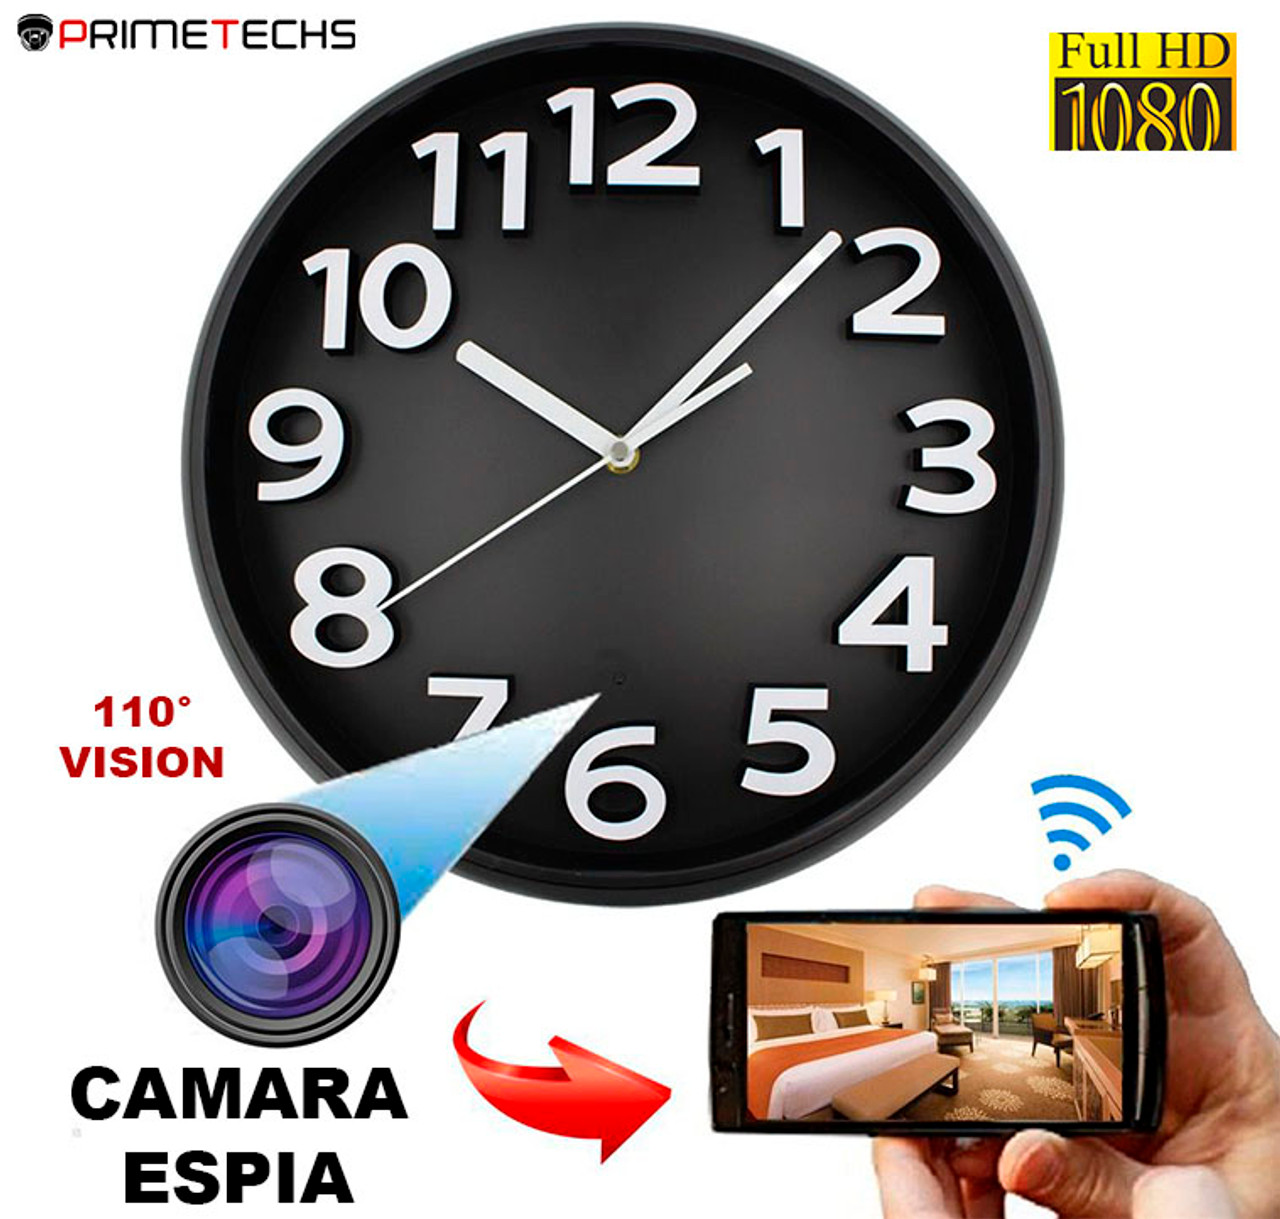 Clancy alquitrán Consulta Reloj espía con cámara de 1080p 2 megapixeles, totalmente WIFI, batería de  respaldo de 1200mAh, infrarrojo discreto, 30fps